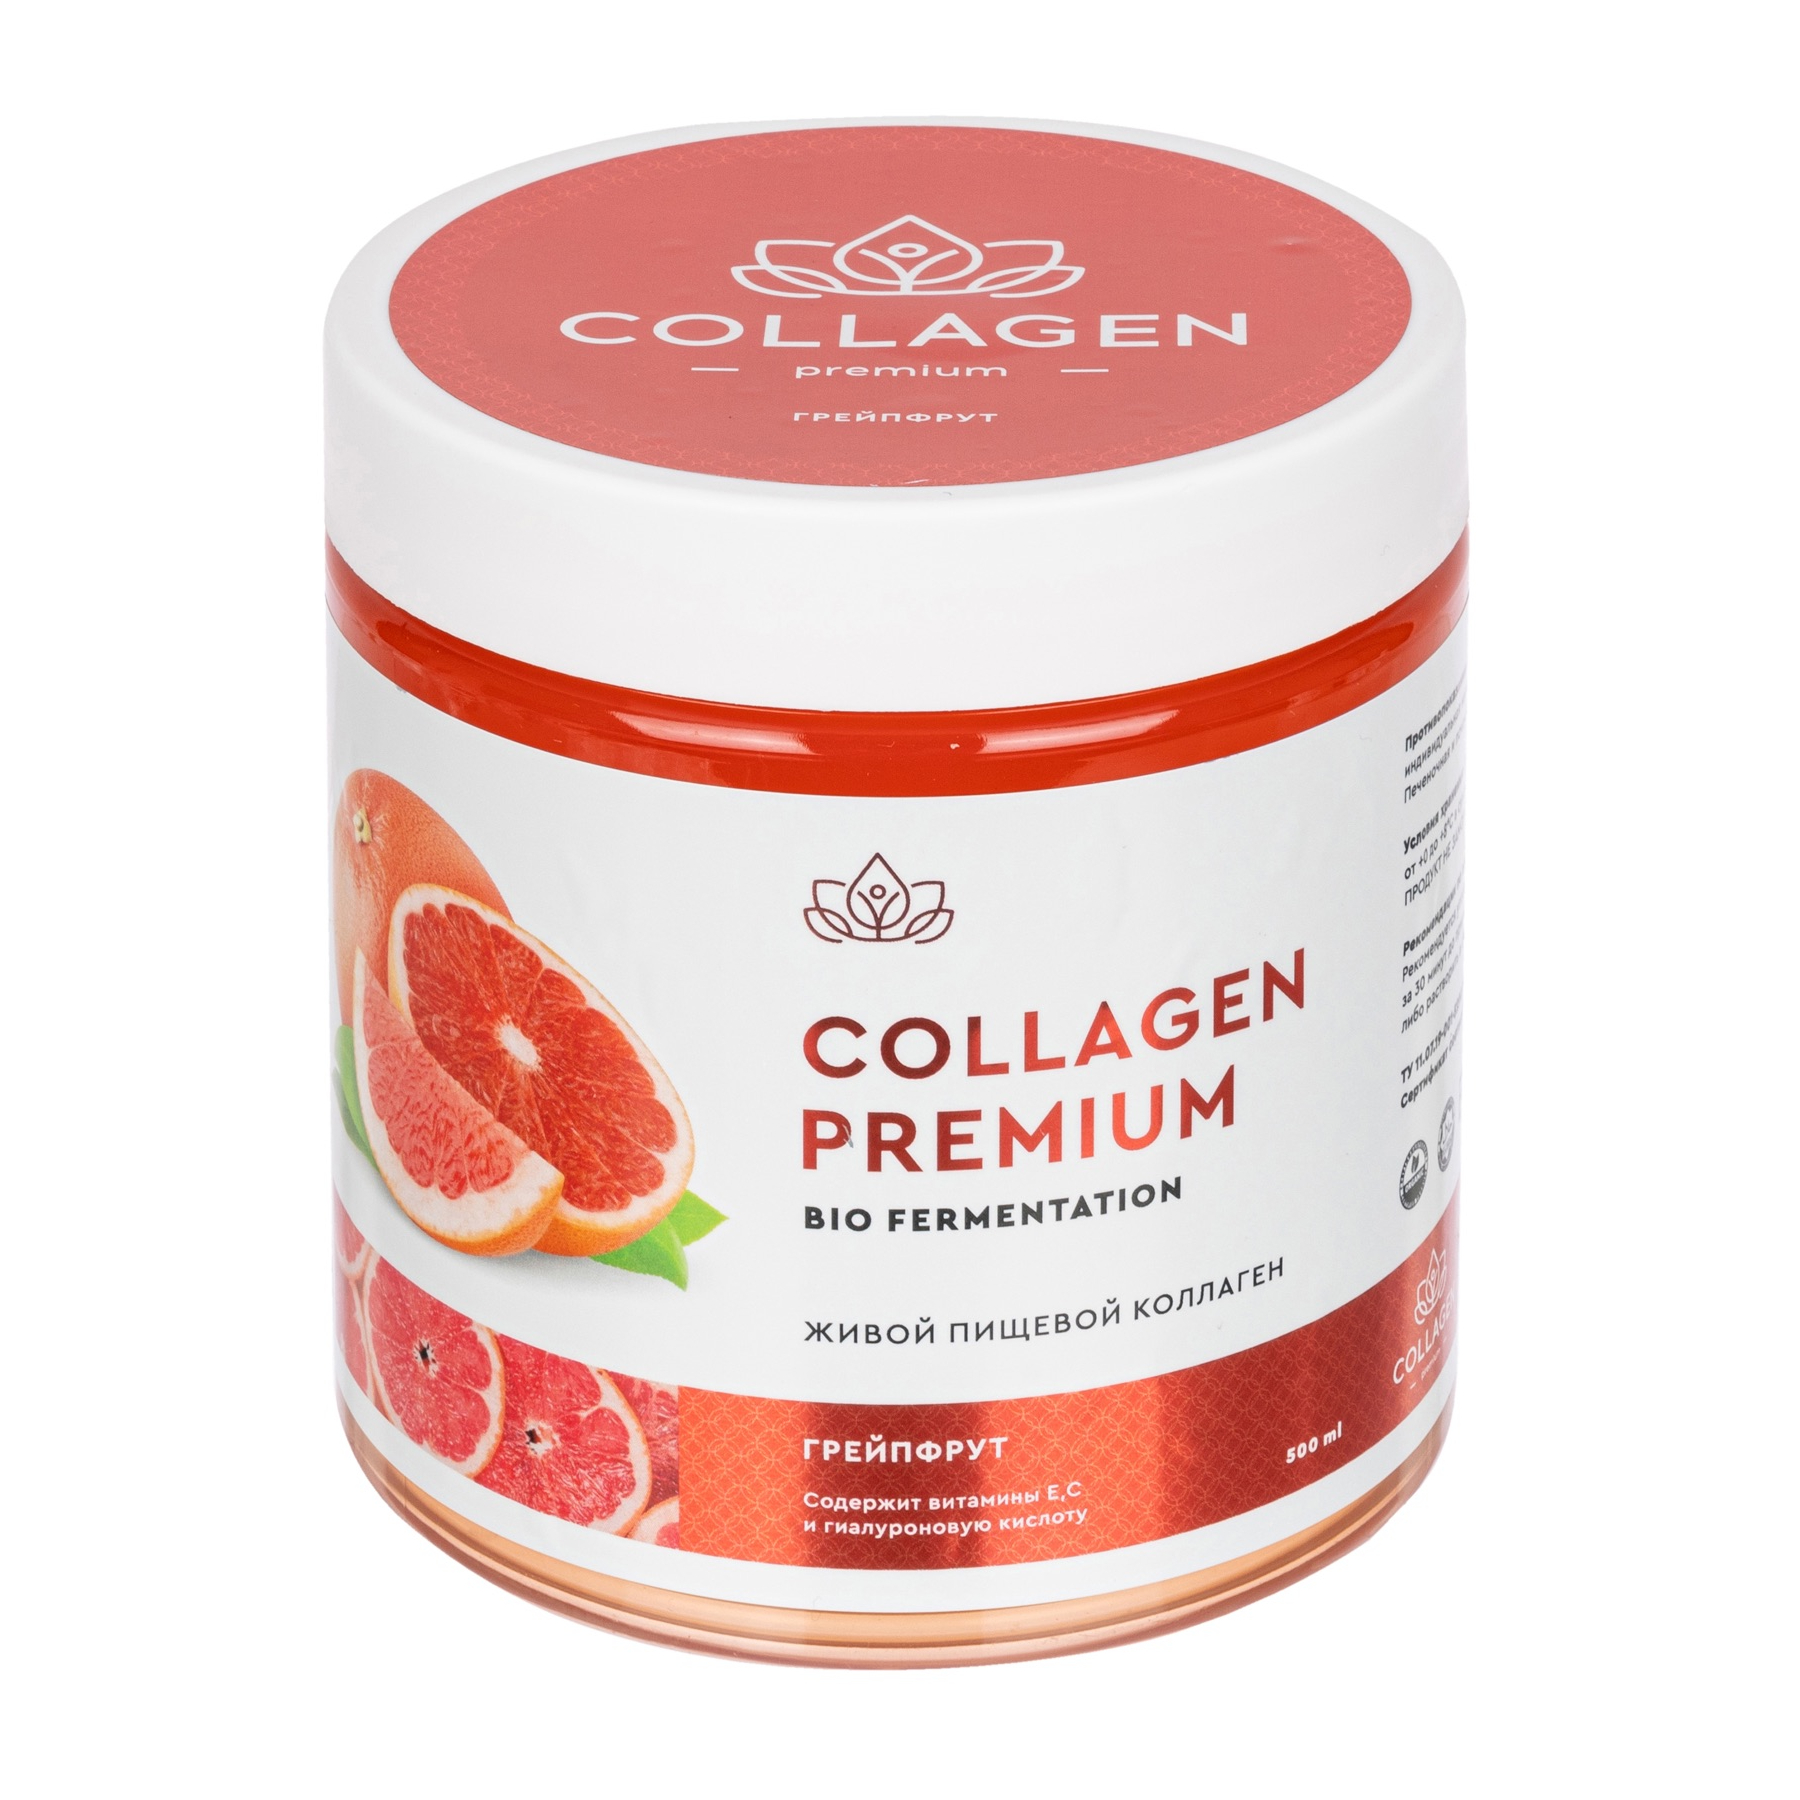 Коллаген Collagen Premium жевательный пищевой желе грейпфрут 500г